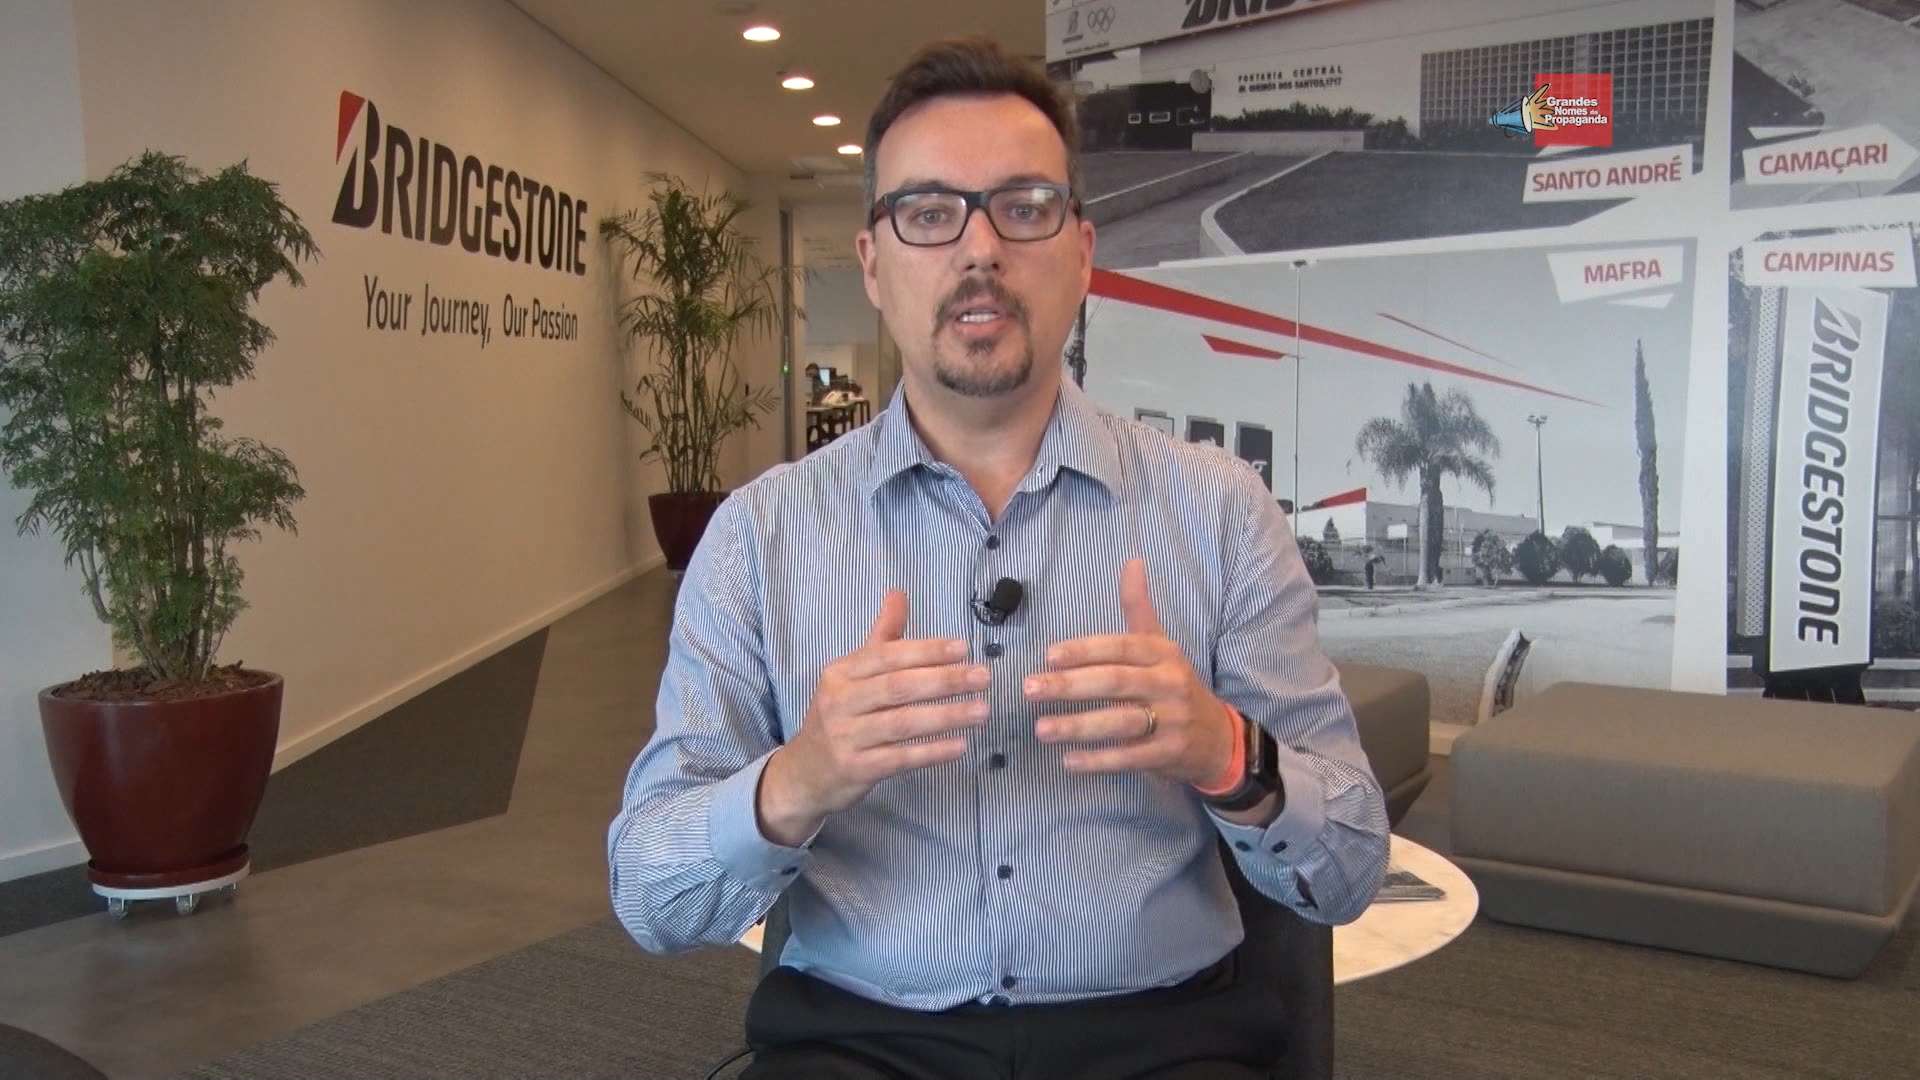 Oduvaldo Viana, Diretor de Marketing da Bridgestone, no quadro Dicas!